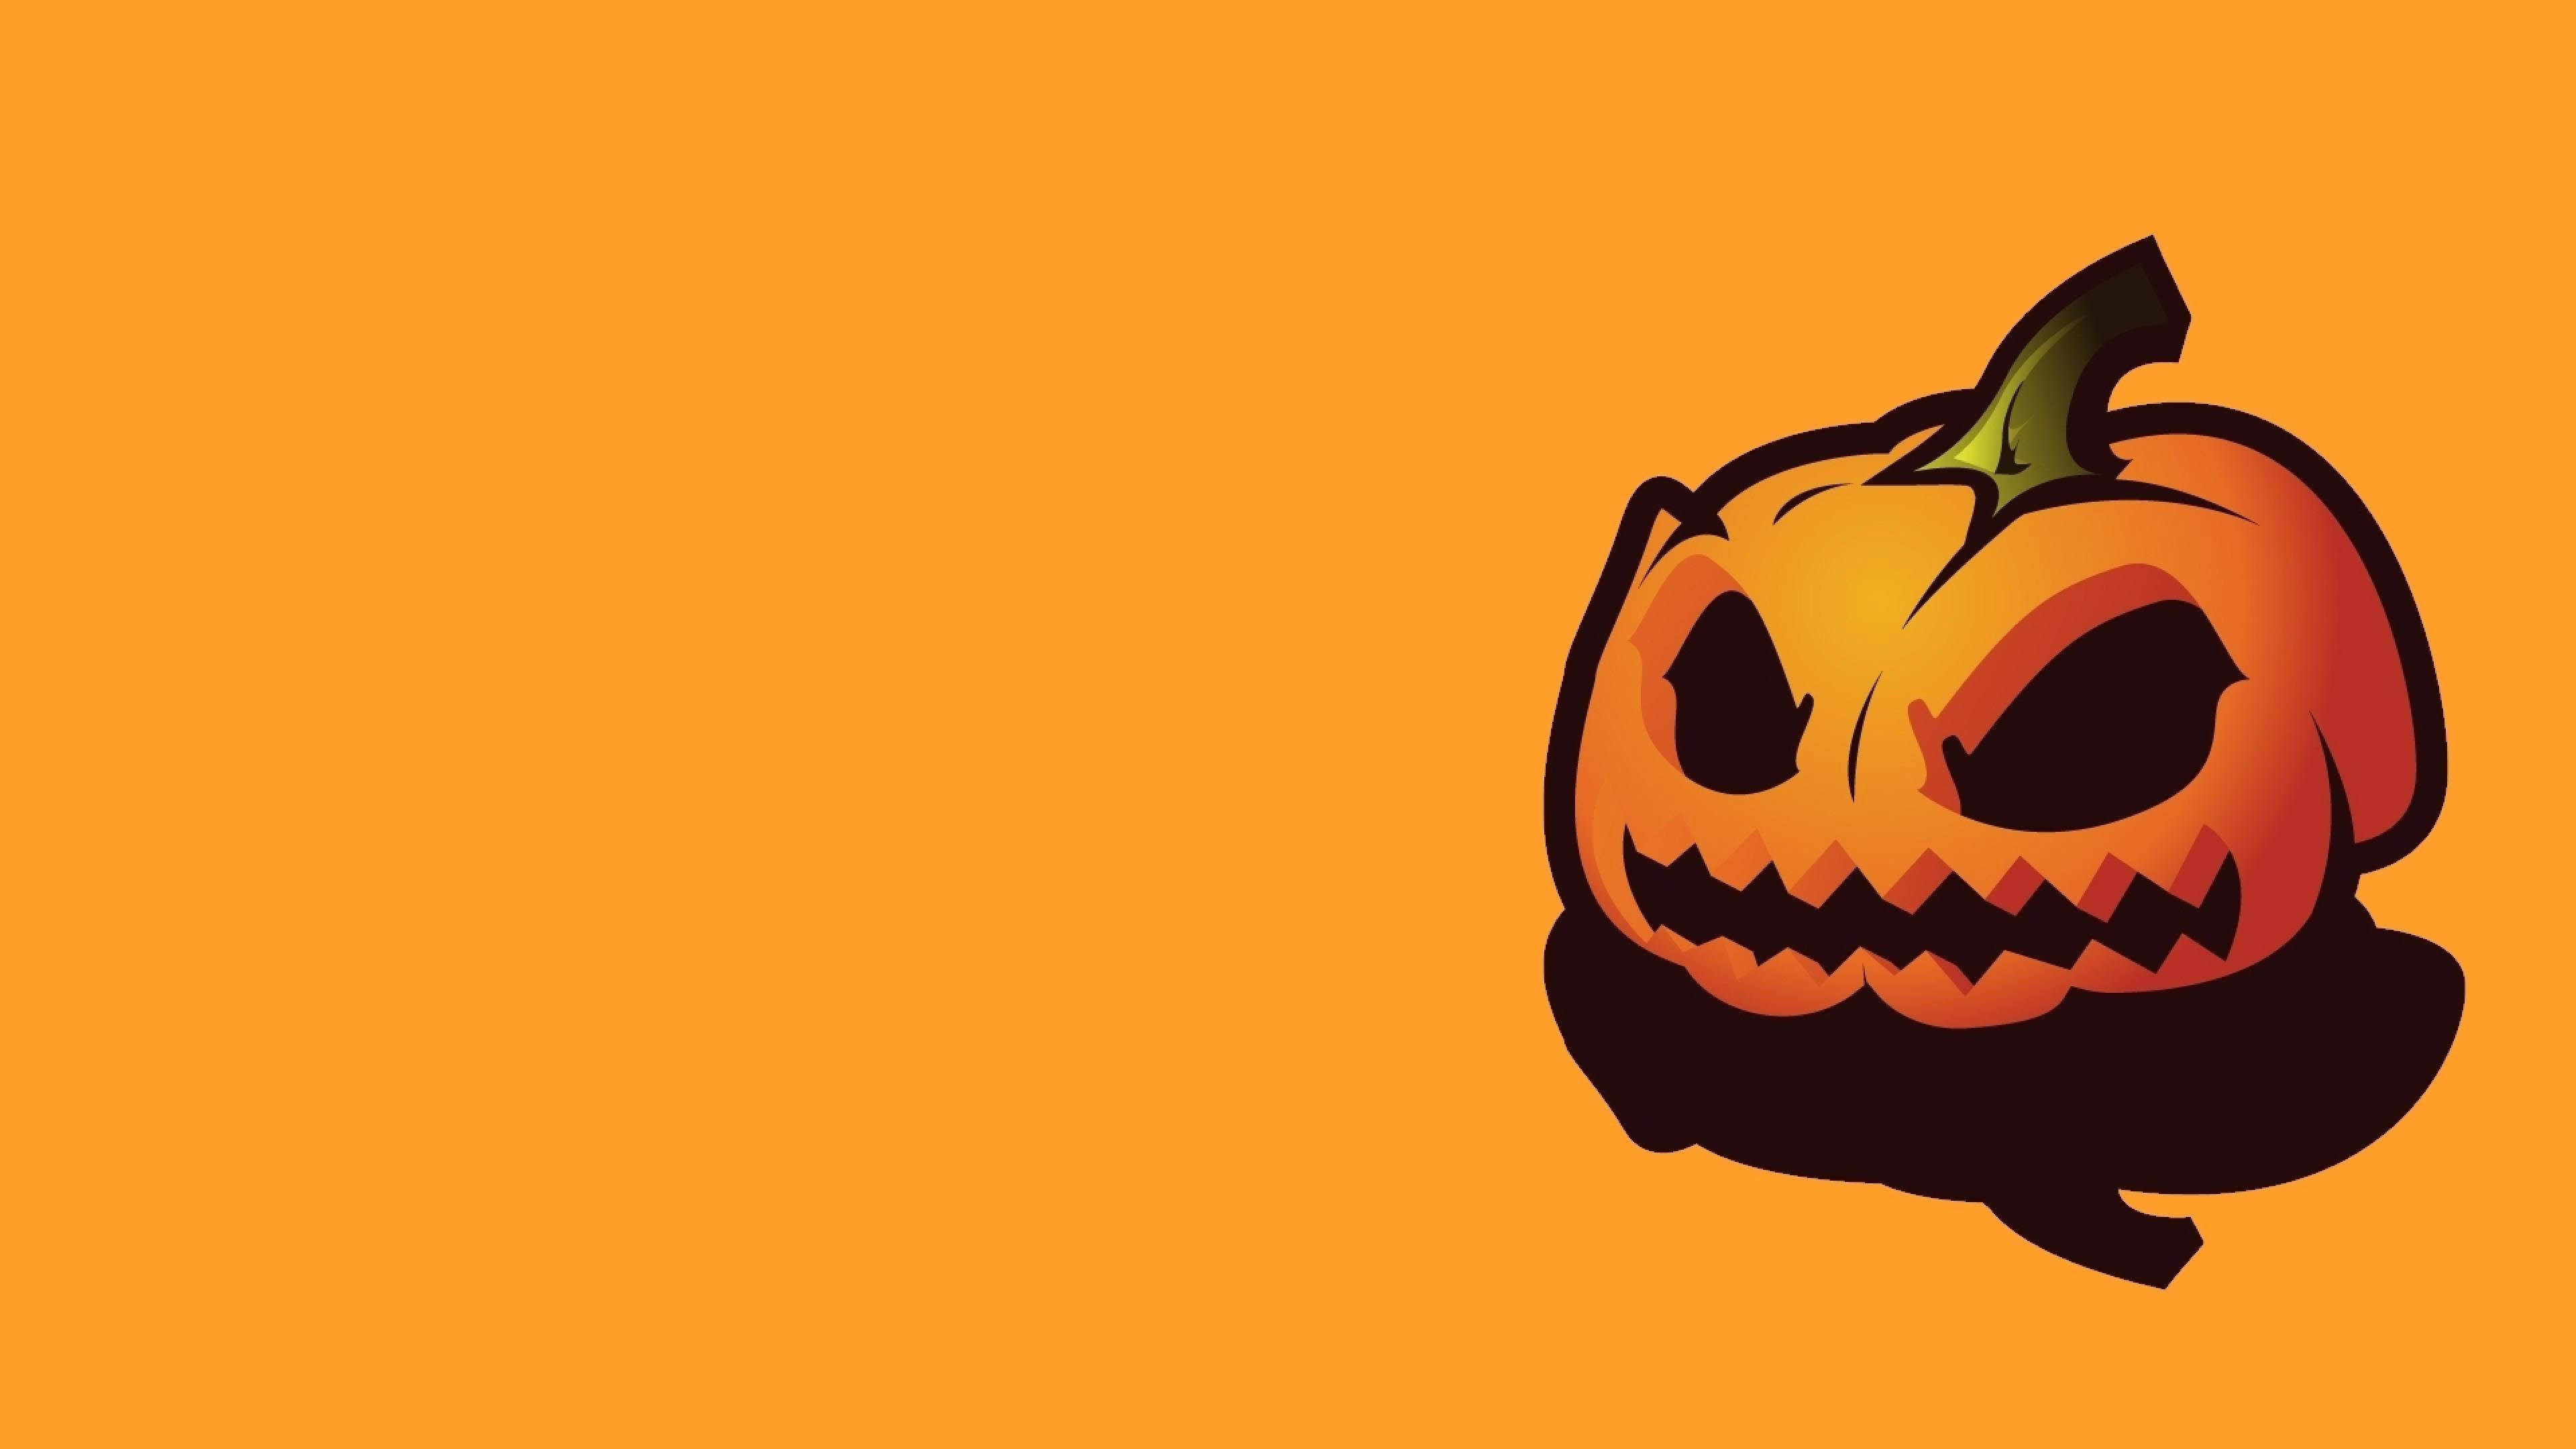 Download Cute Halloween Pumpkin Art Wallpaper